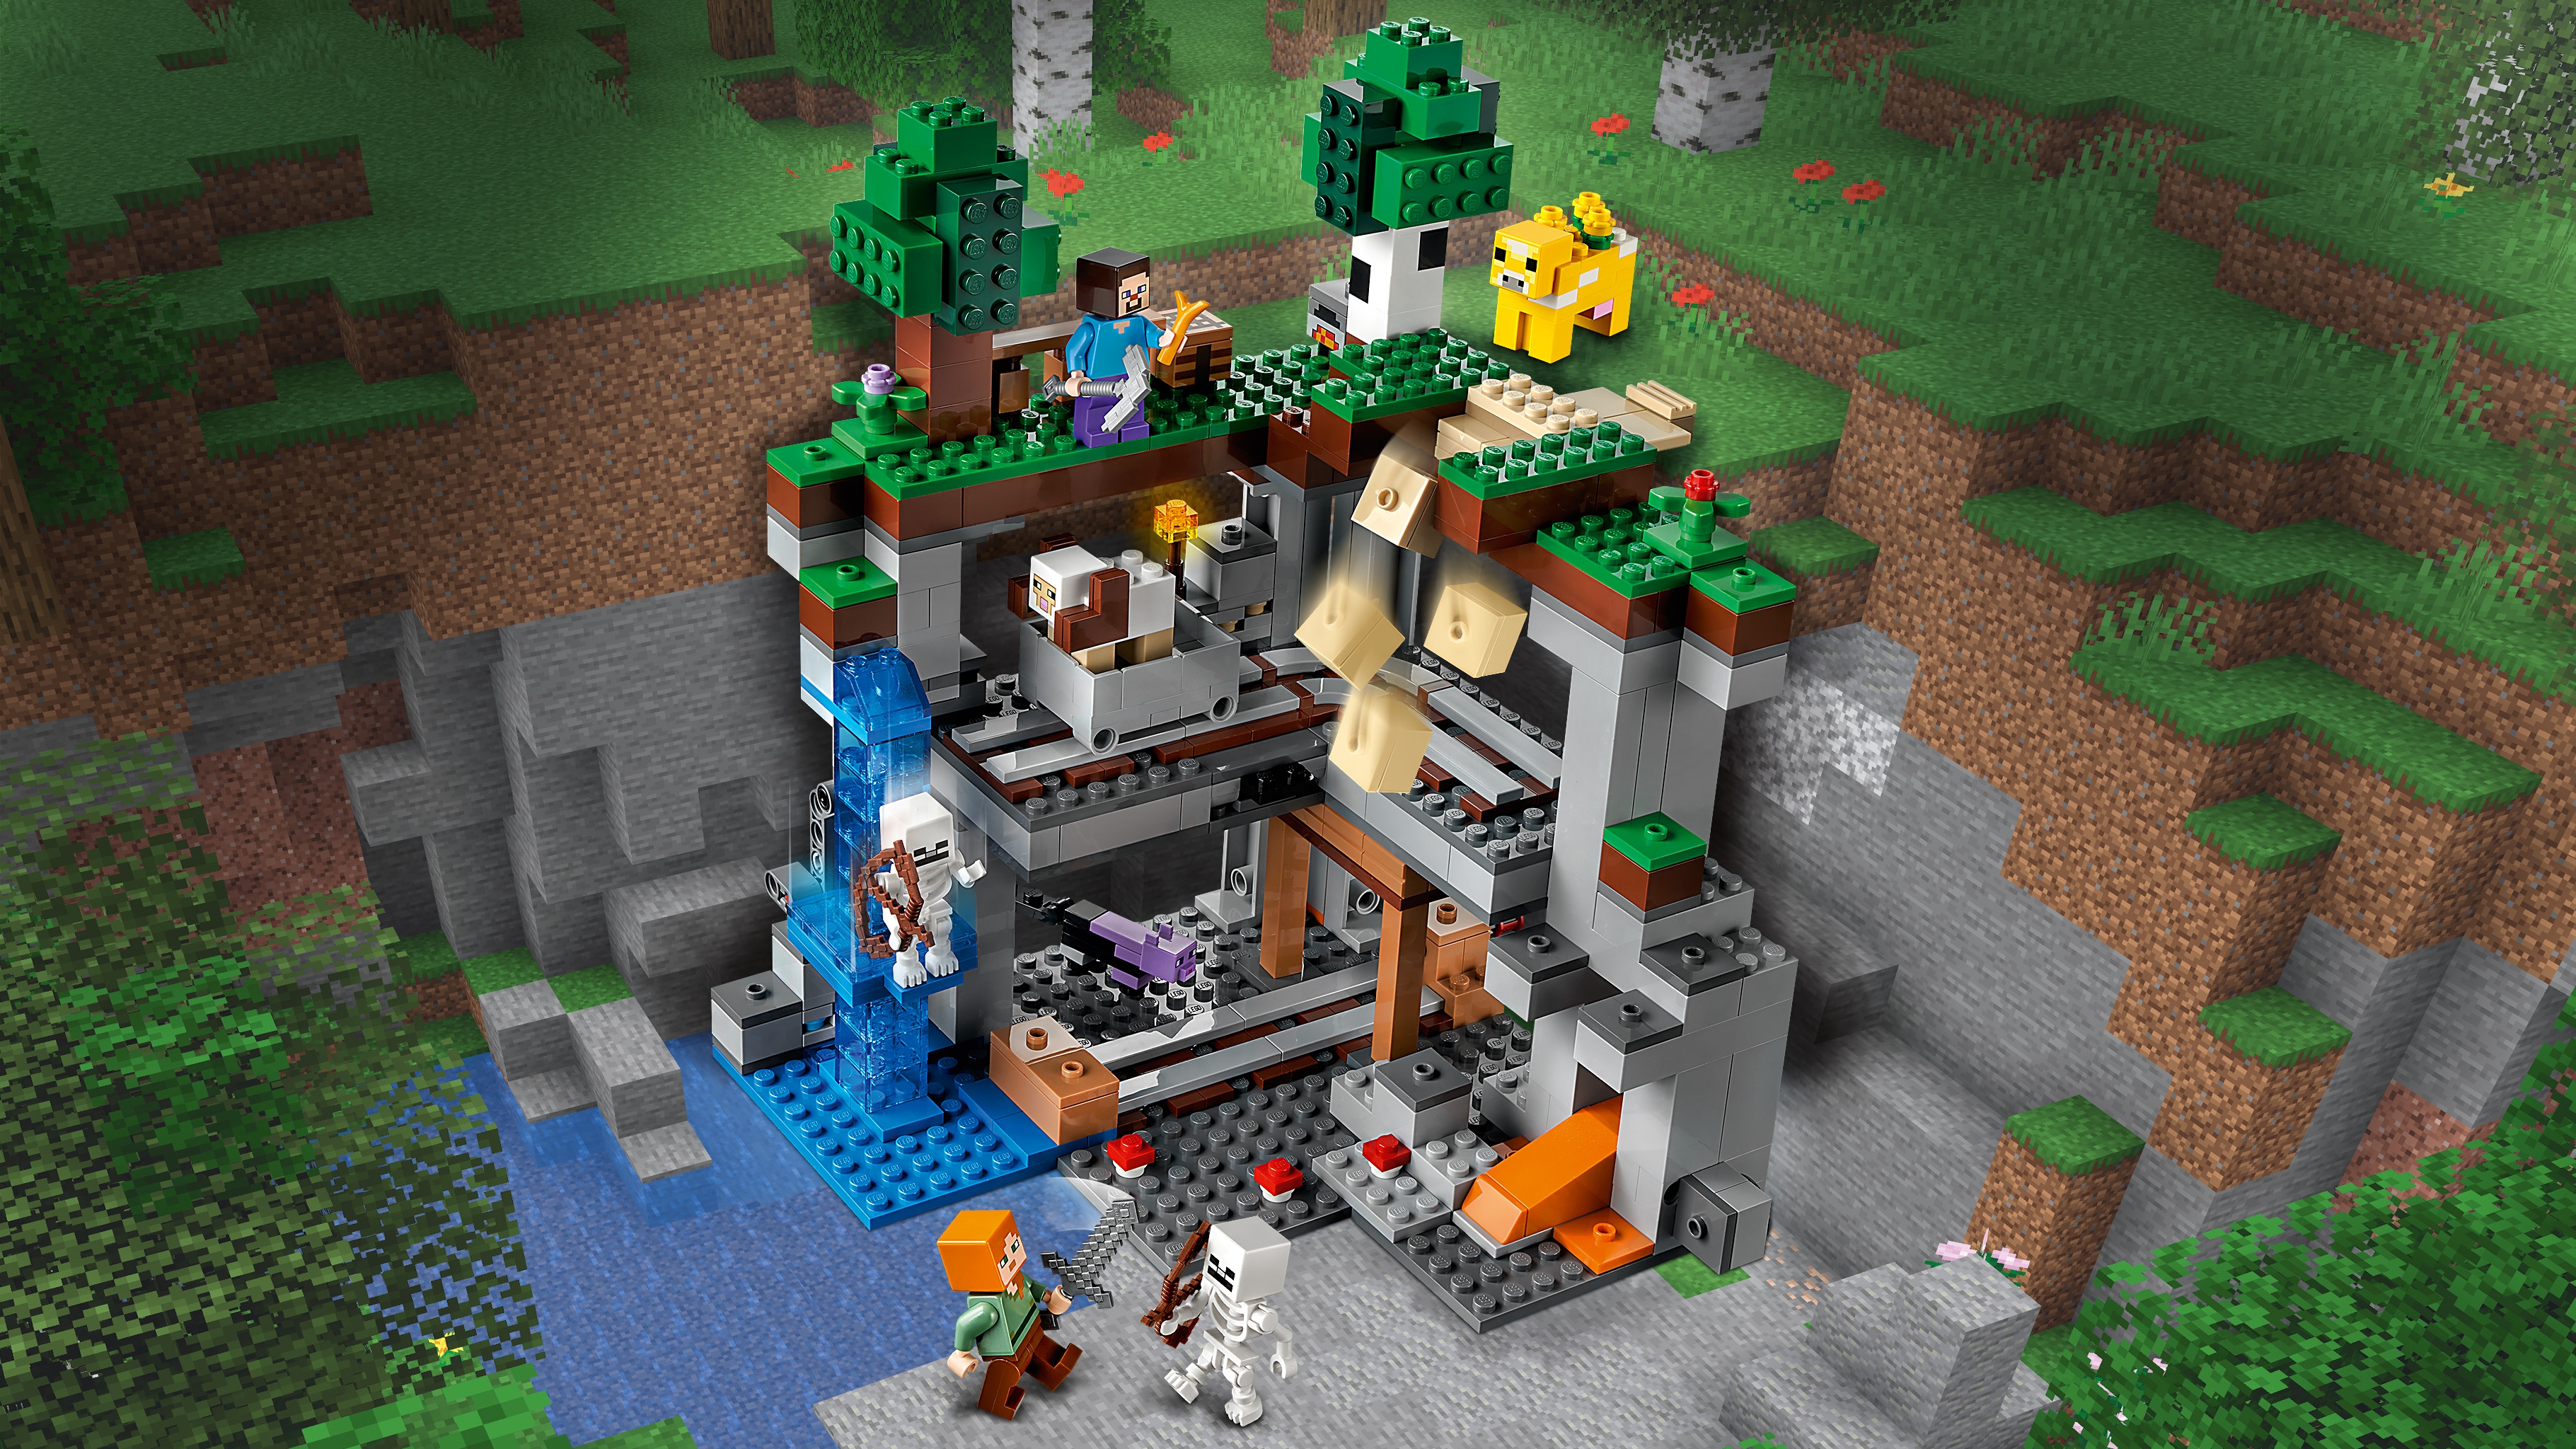 最初の冒険 21169 - レゴ®マインクラフト セット - LEGO.comキッズ